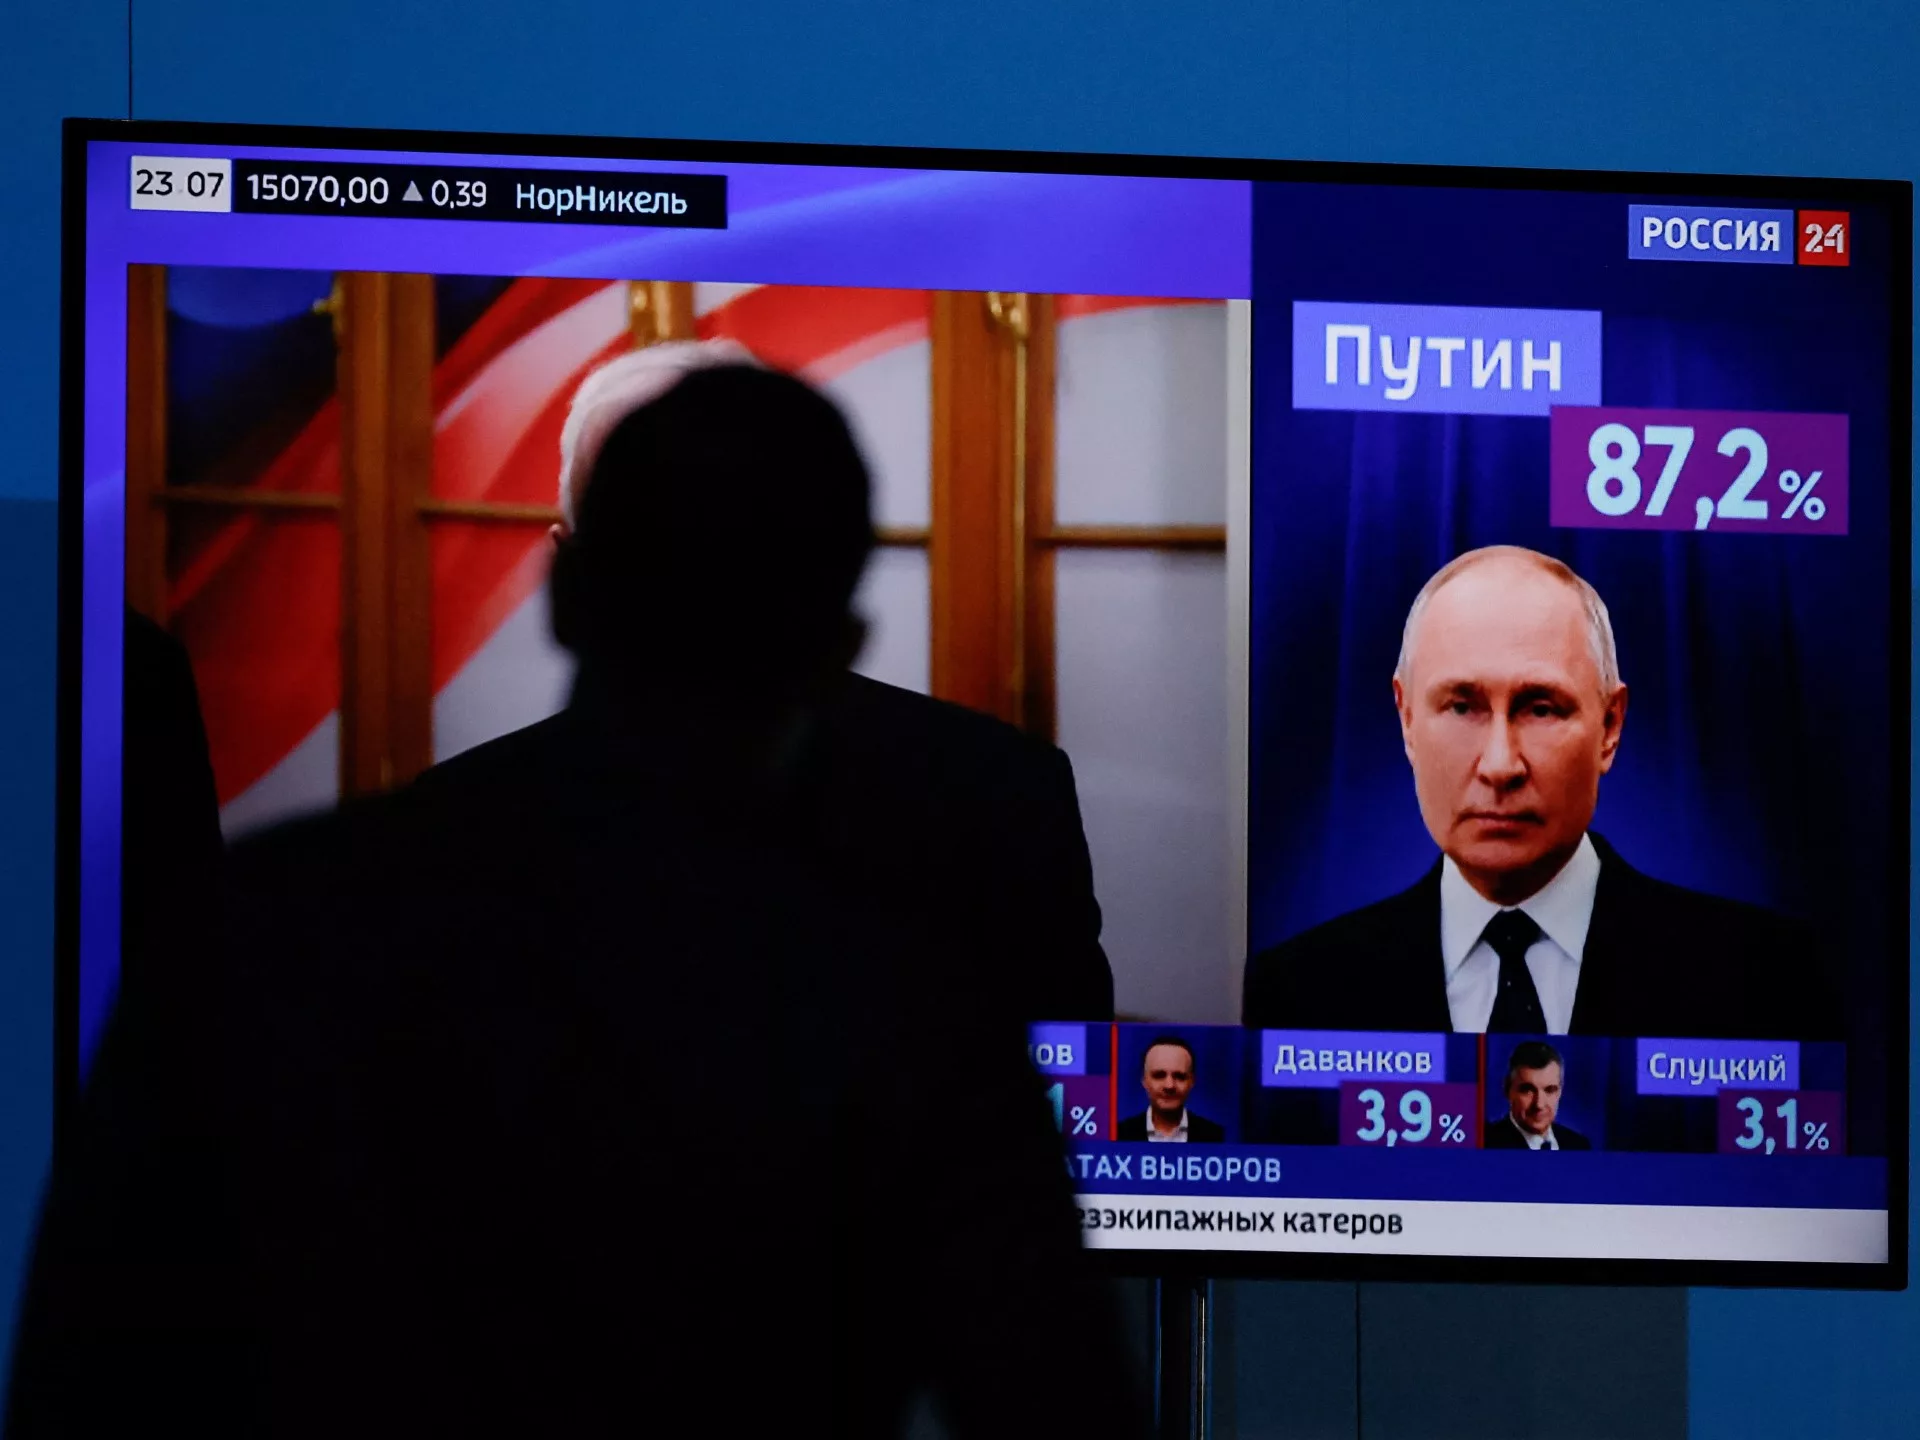 Putin de Rusia elogia la victoria en unas elecciones criticadas por falta de legitimidad |  Vladímir Putin Noticias